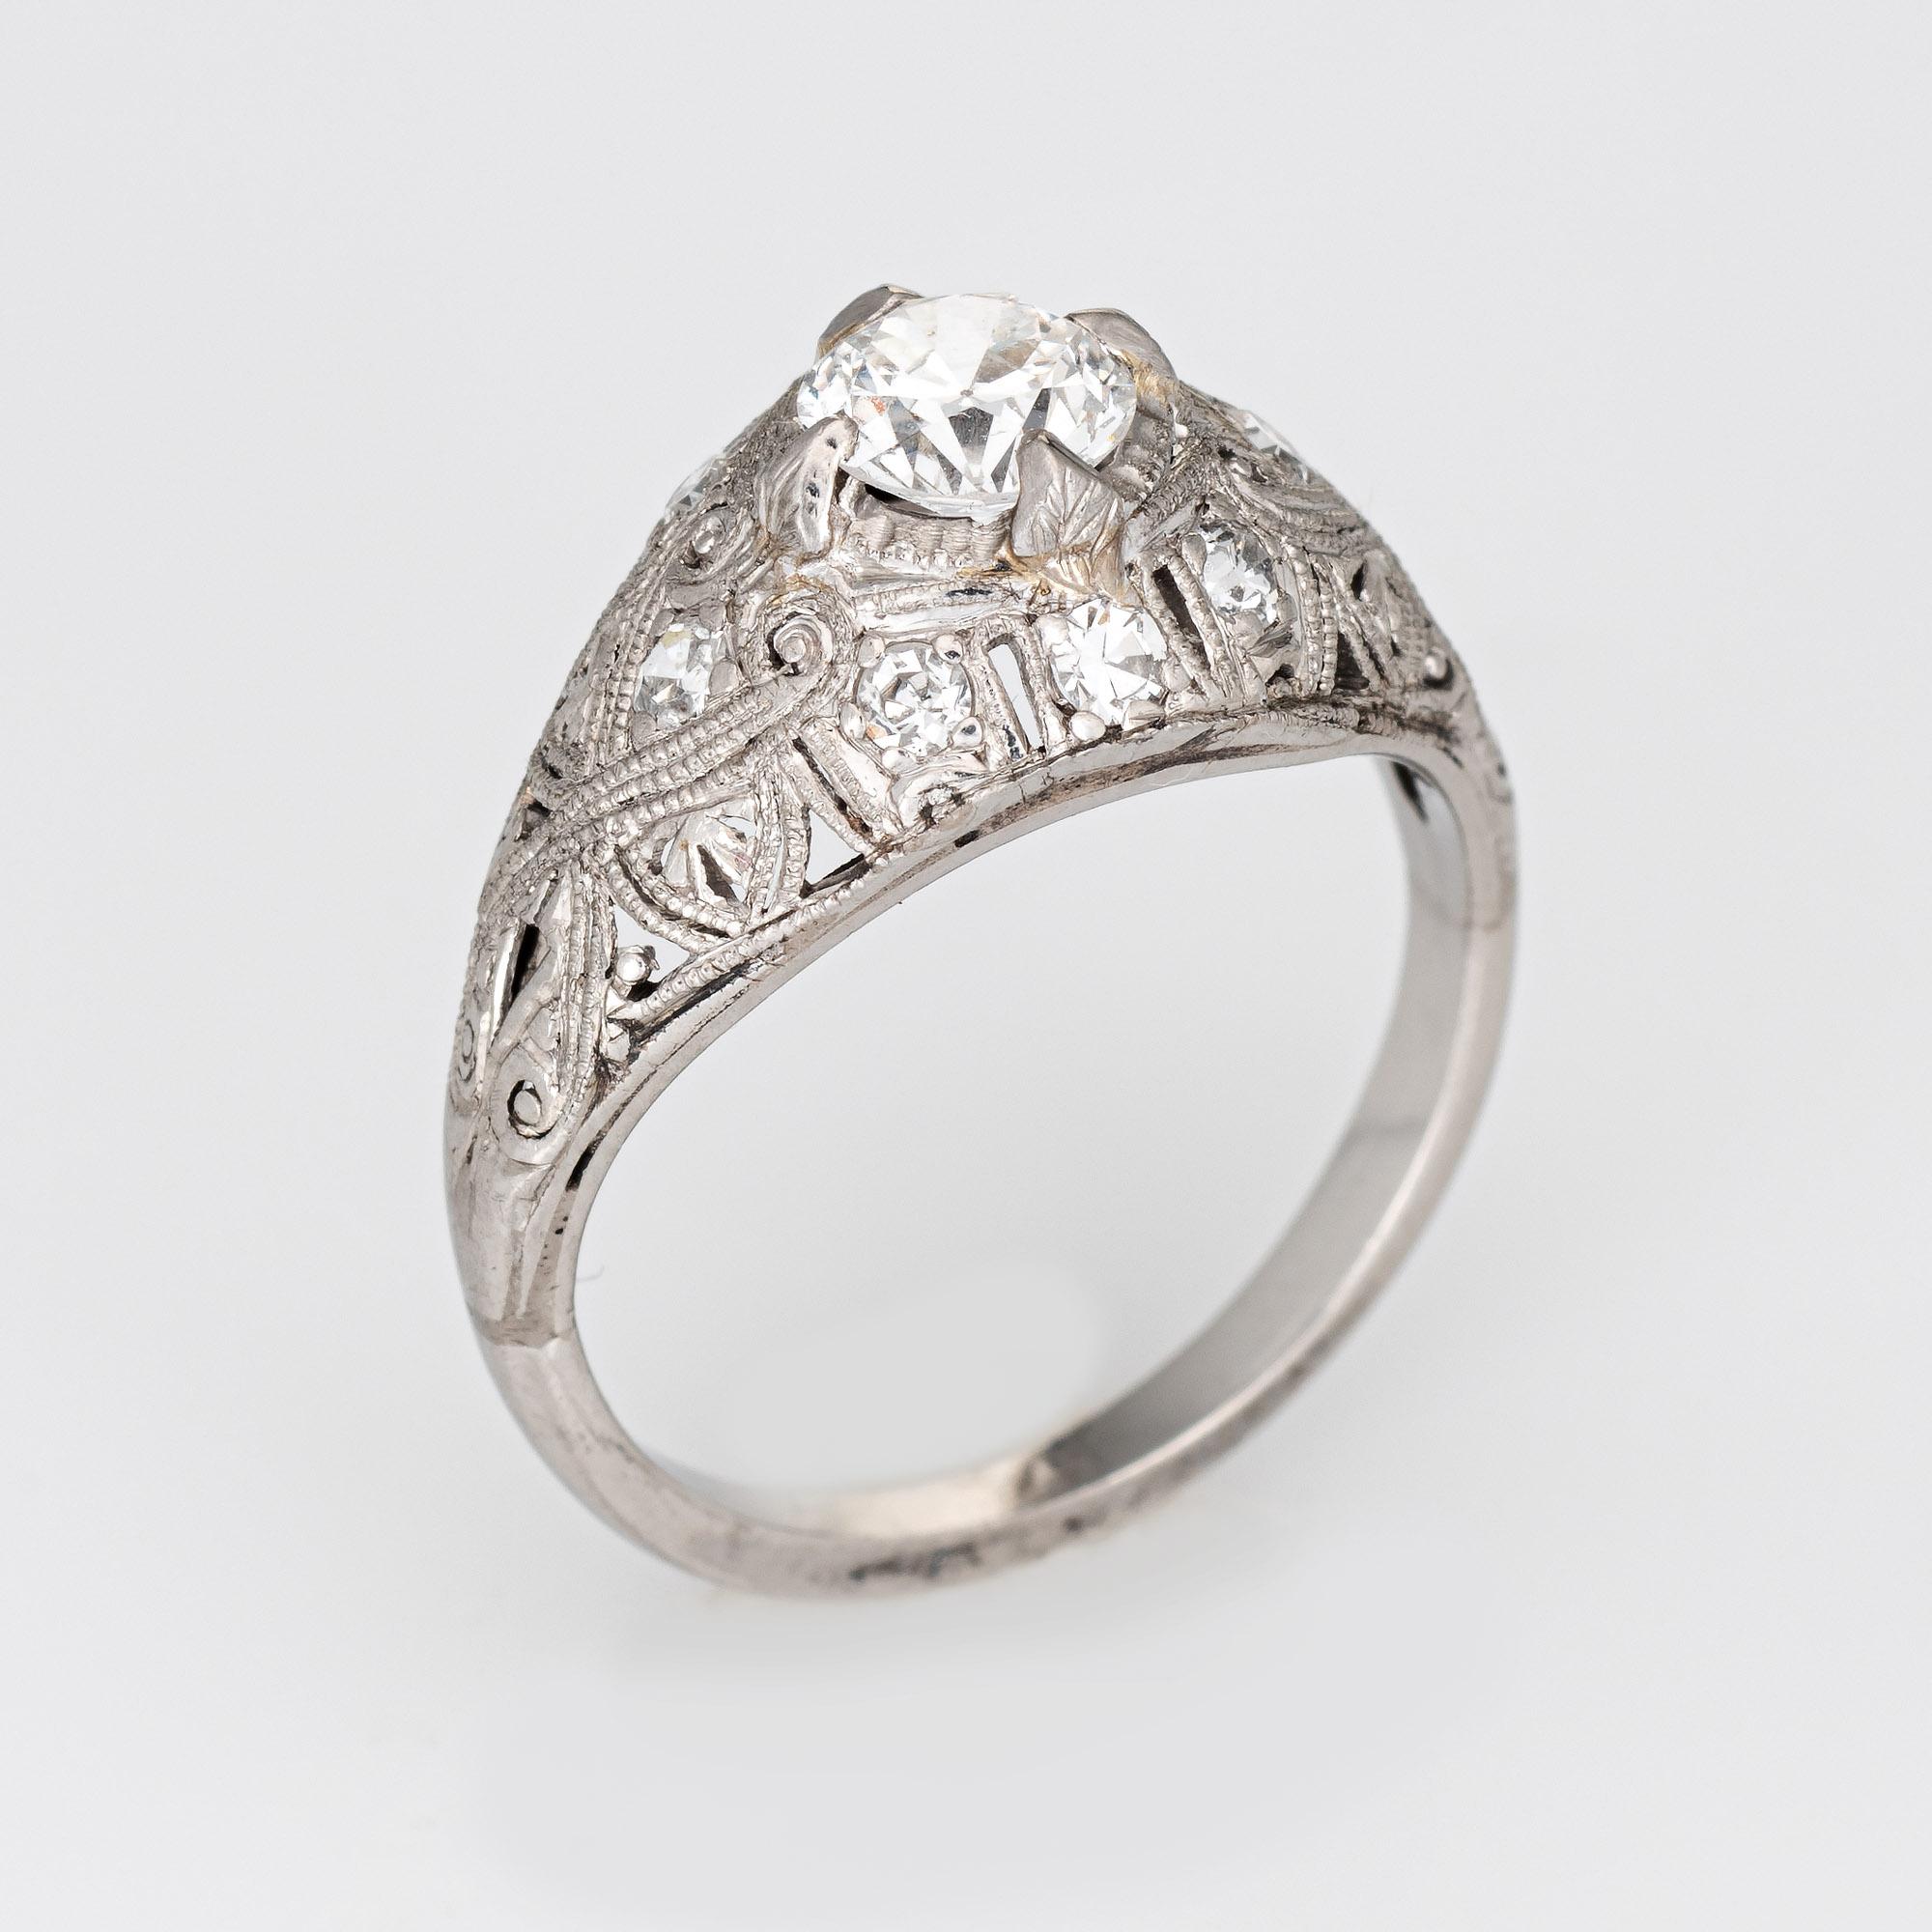 Fein detaillierter antiker edwardianischer Diamant-Verlobungsring (um 1900 bis 1910), gefertigt aus 900er Platin. 

Der in der Mitte gefasste Diamant im alten europäischen Schliff hat schätzungsweise 0,55 Karat (geschätzte Farbe H-I und Reinheit